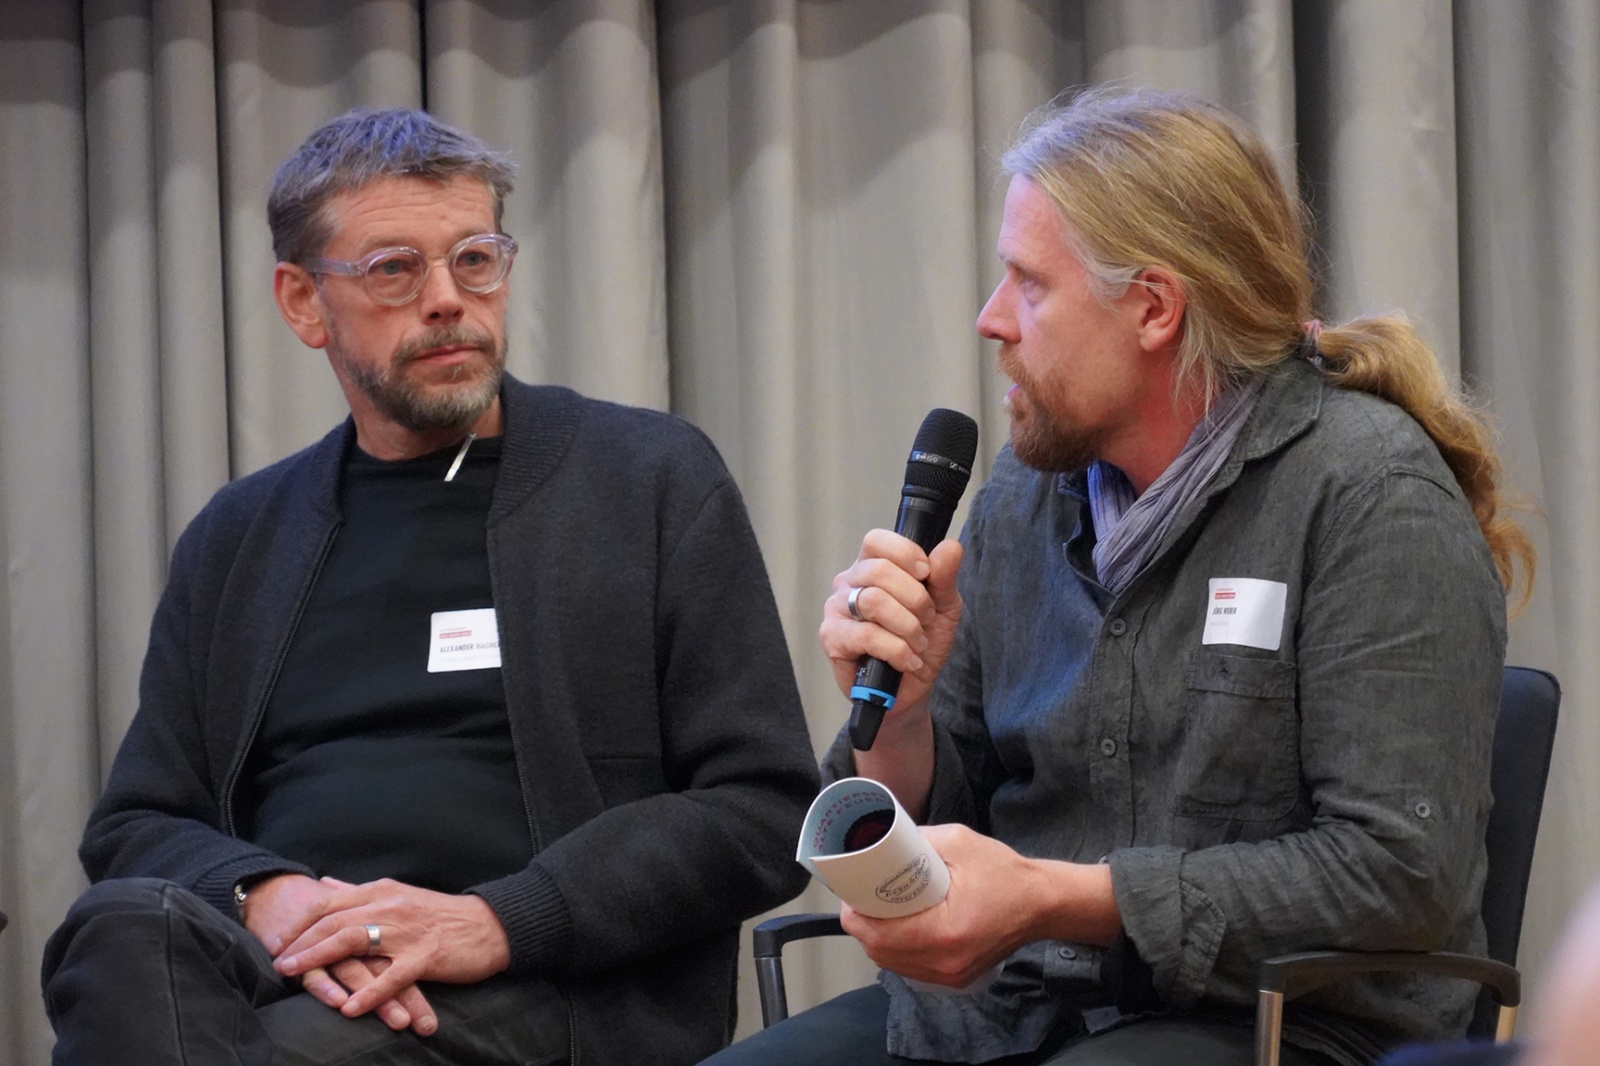 Wohnbaukonferenz »Neues Wohnen denken« | SESSION : Alexander Hagner und Jörg Weber, Bild: Katja Gehlfuß